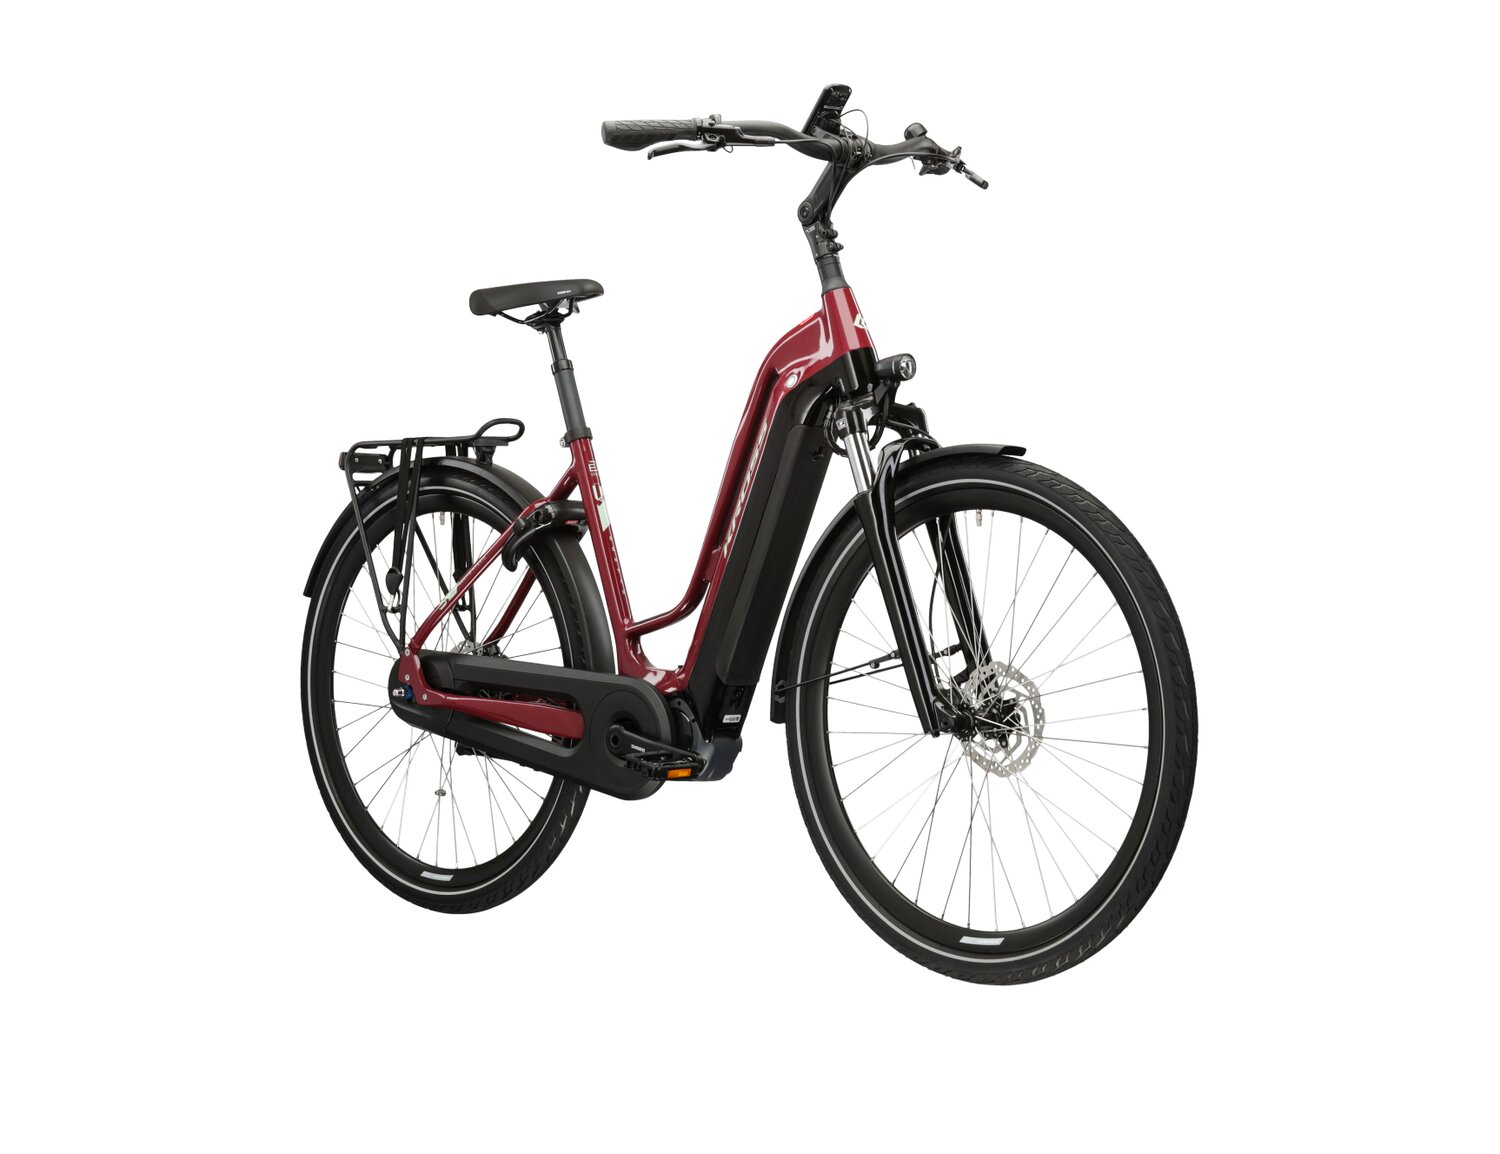  Elektryczny rower miejski Ebike City KROSS Sentio Hybrid 6.0 500 Wh UNI na aluminiowej ramie w kolorze wiśniowym wyposażony w osprzęt shimano i napęd elektryczny Shimano